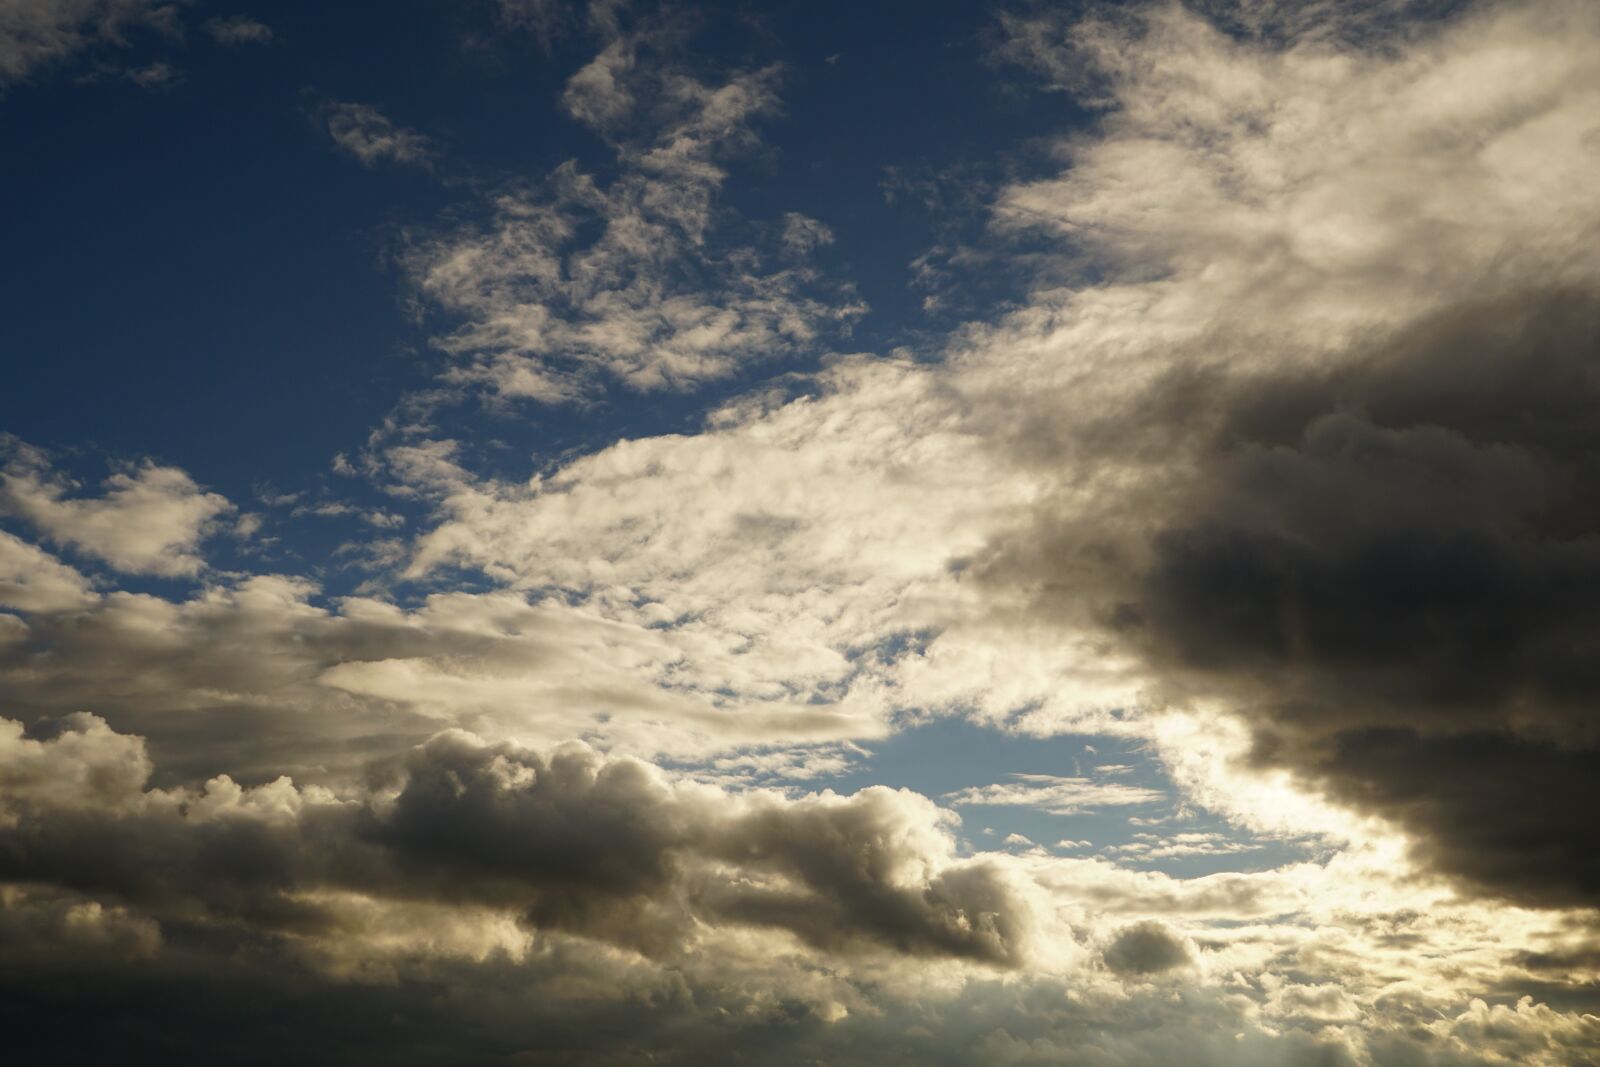 Sony a6300 + Sony Vario Tessar T* FE 24-70mm F4 ZA OSS sample photo. Clouded sky, sky, cumulus photography